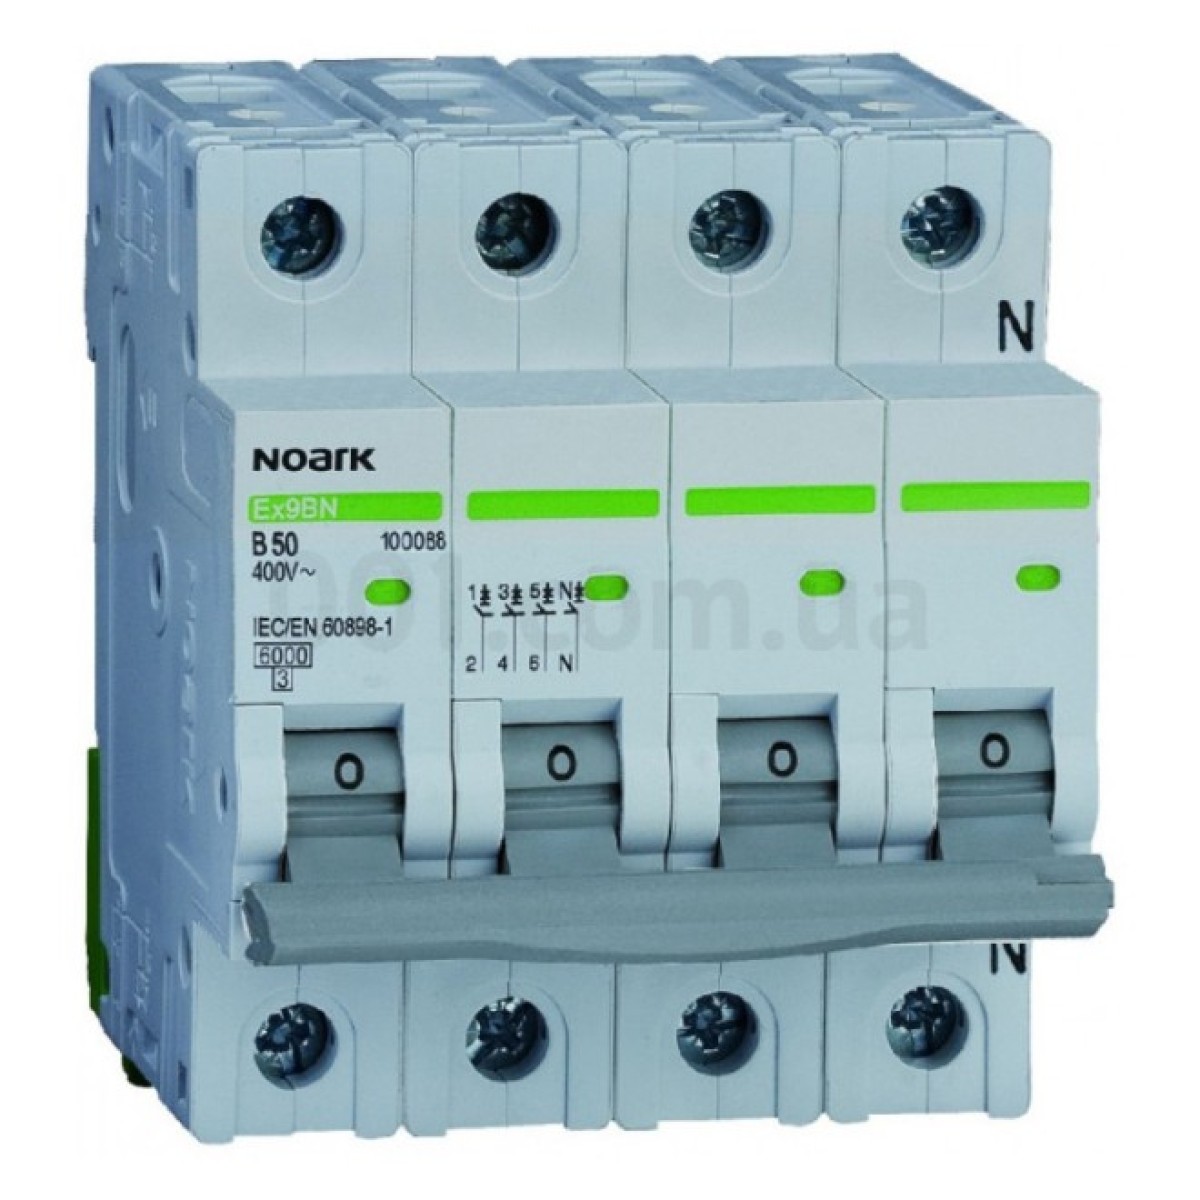 Модульний автоматичний вимикач Ex9BN 6kA хар-ка C 3A 3P+N, NOARK 256_256.jpg